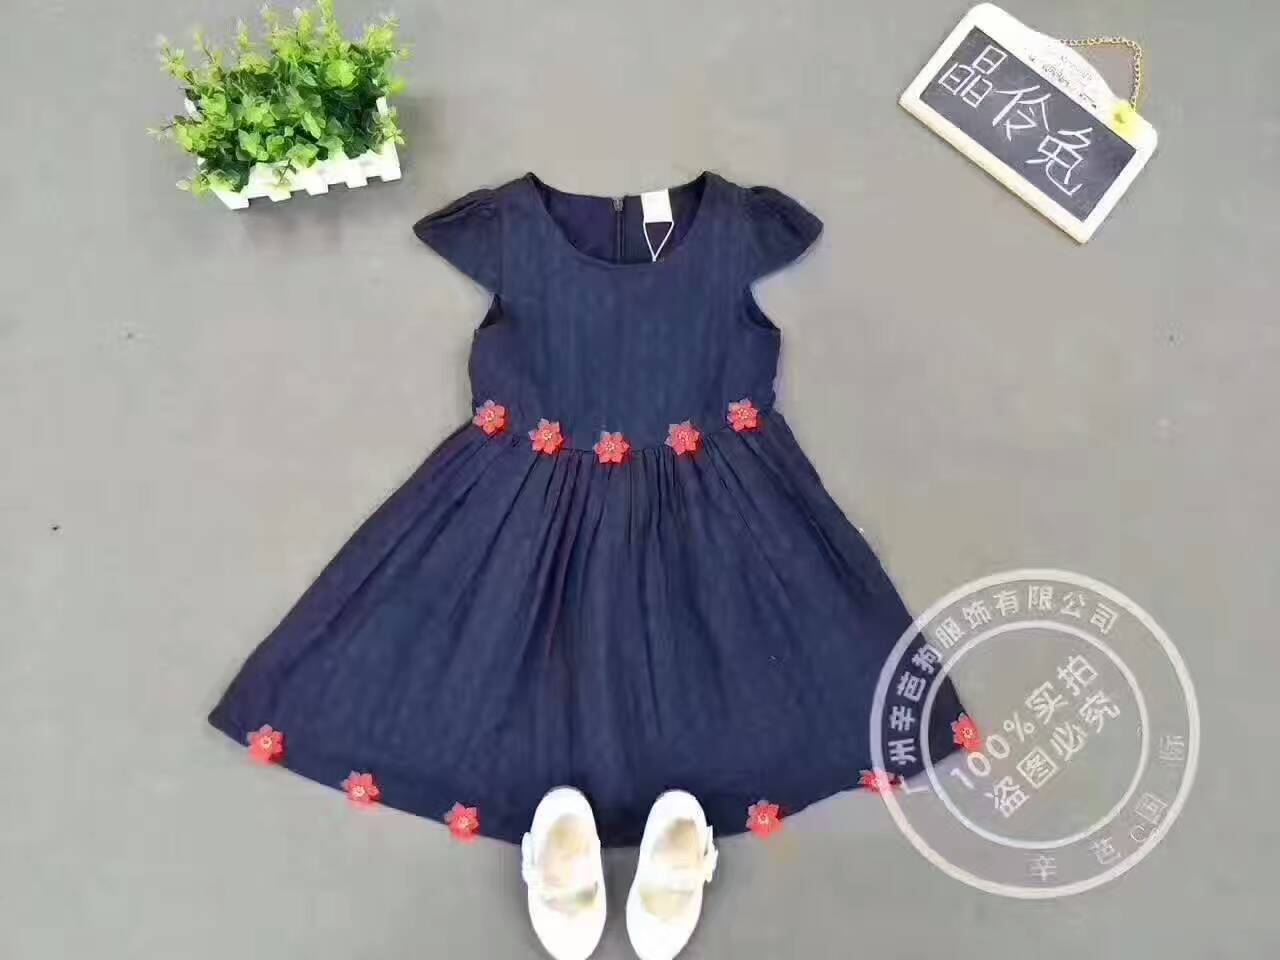 广州服饰之晶伶兔童装品牌2017年夏季新品